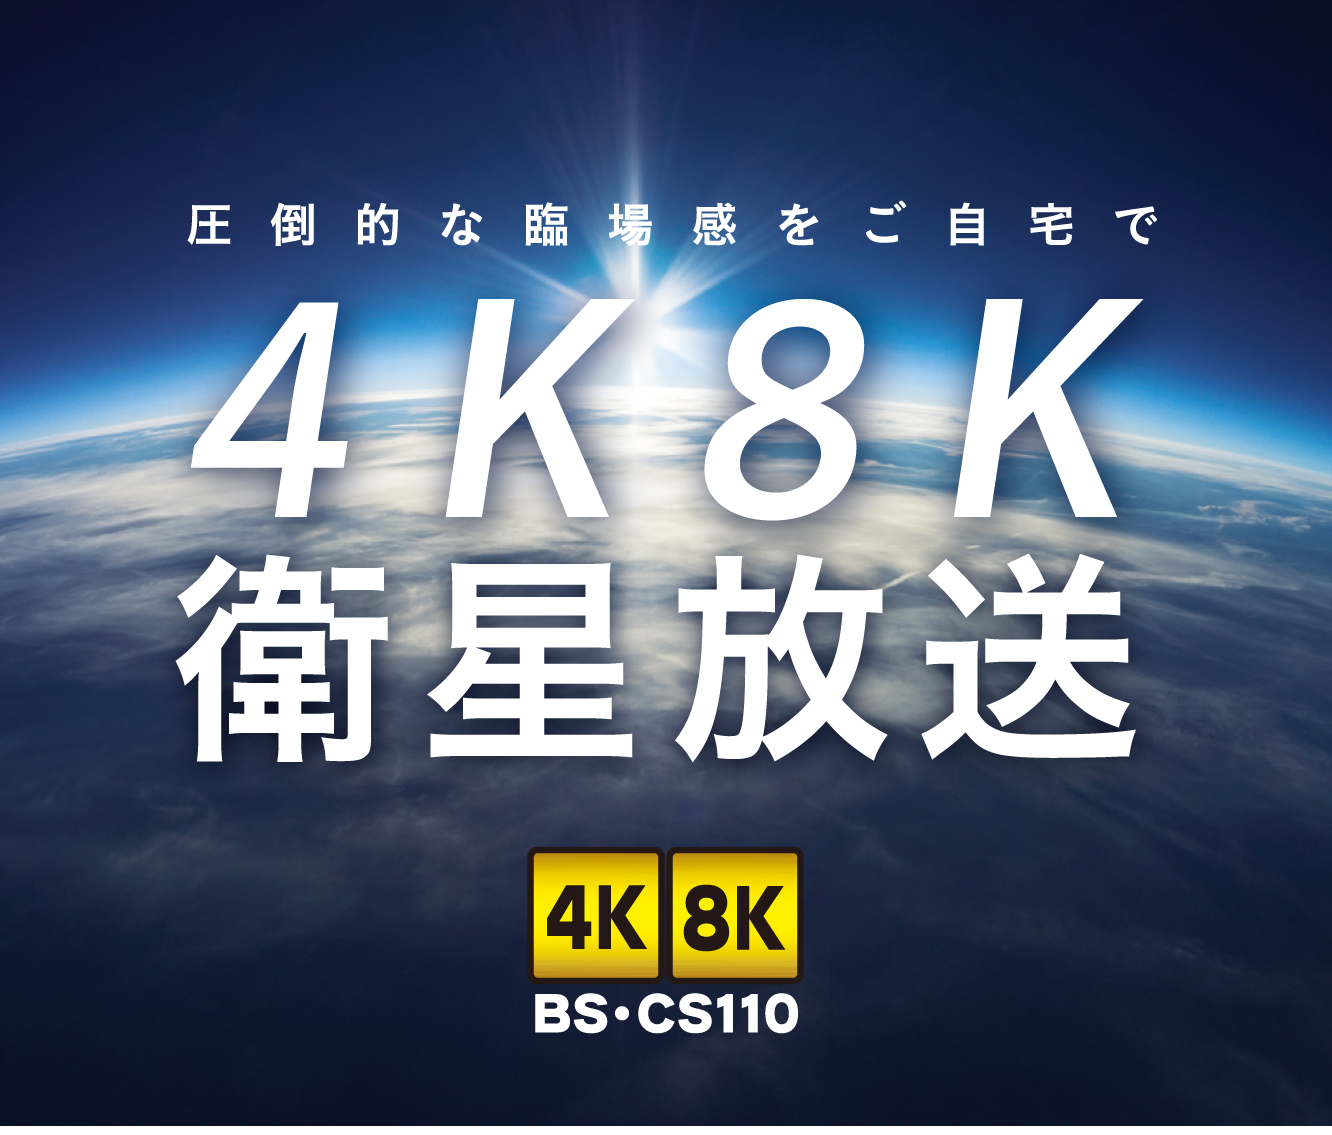 新4K8K衛星放送 4K8K BS・CS110